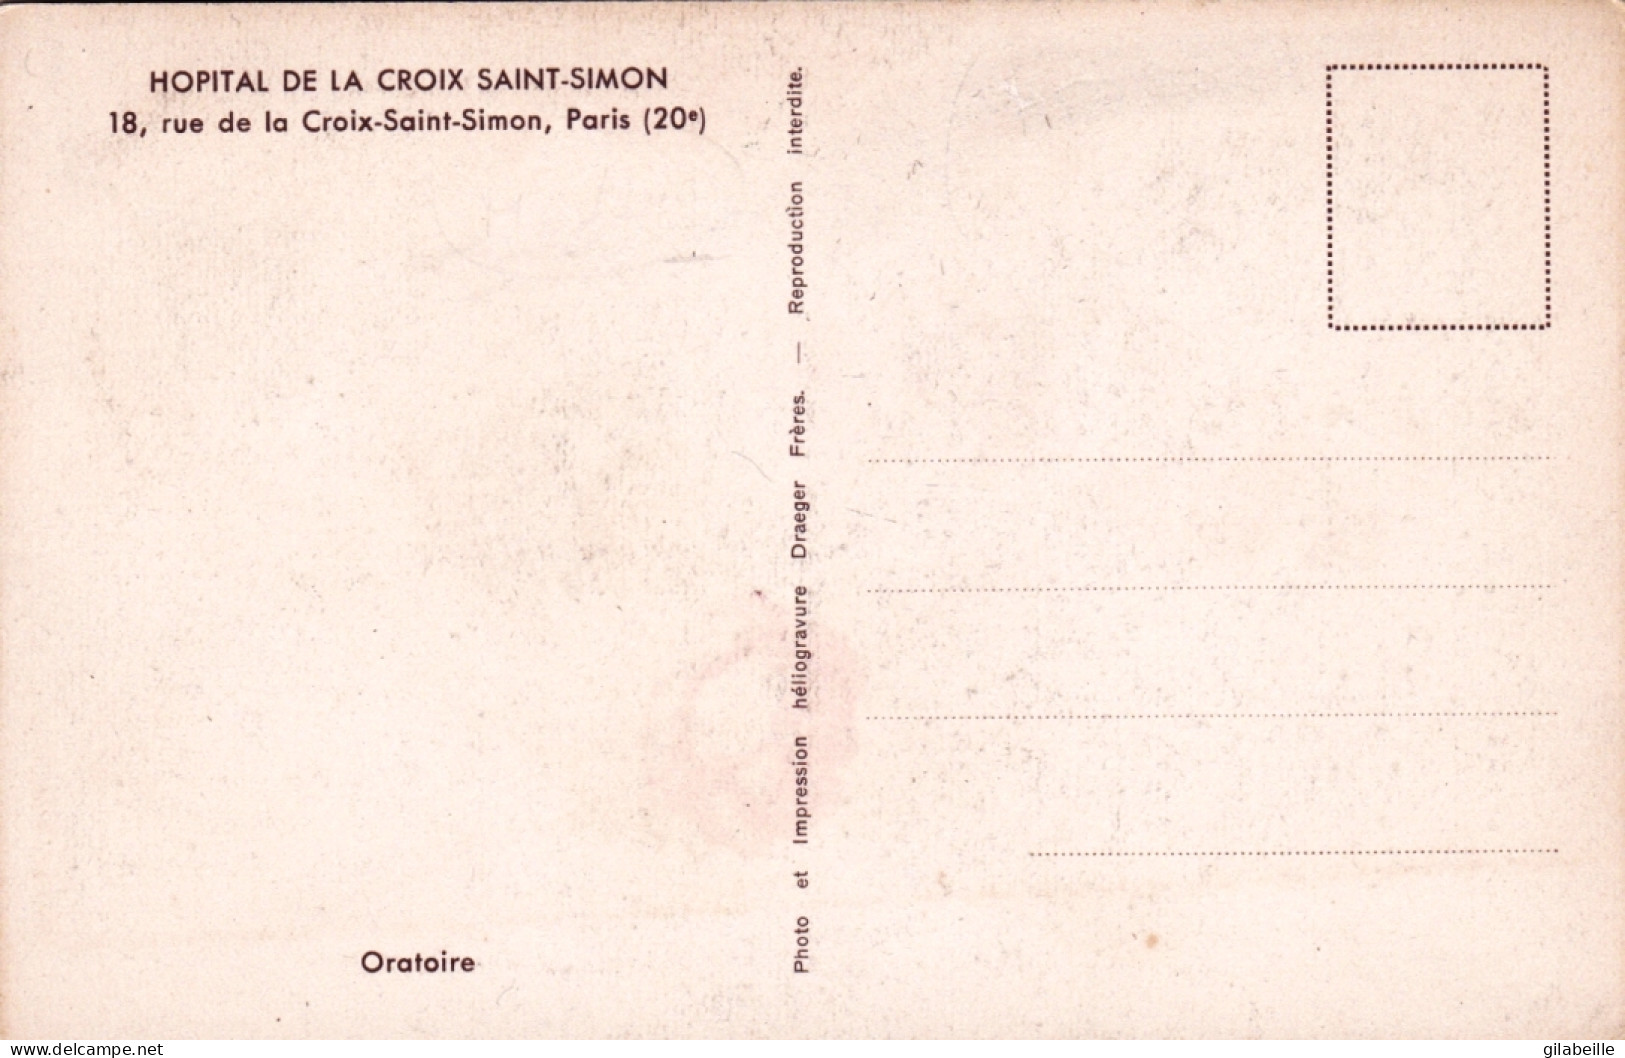 75 -  PARIS 20e 18, Rue De La Croix-Saint-Simon Hopital - Oratoire - Paris (20)